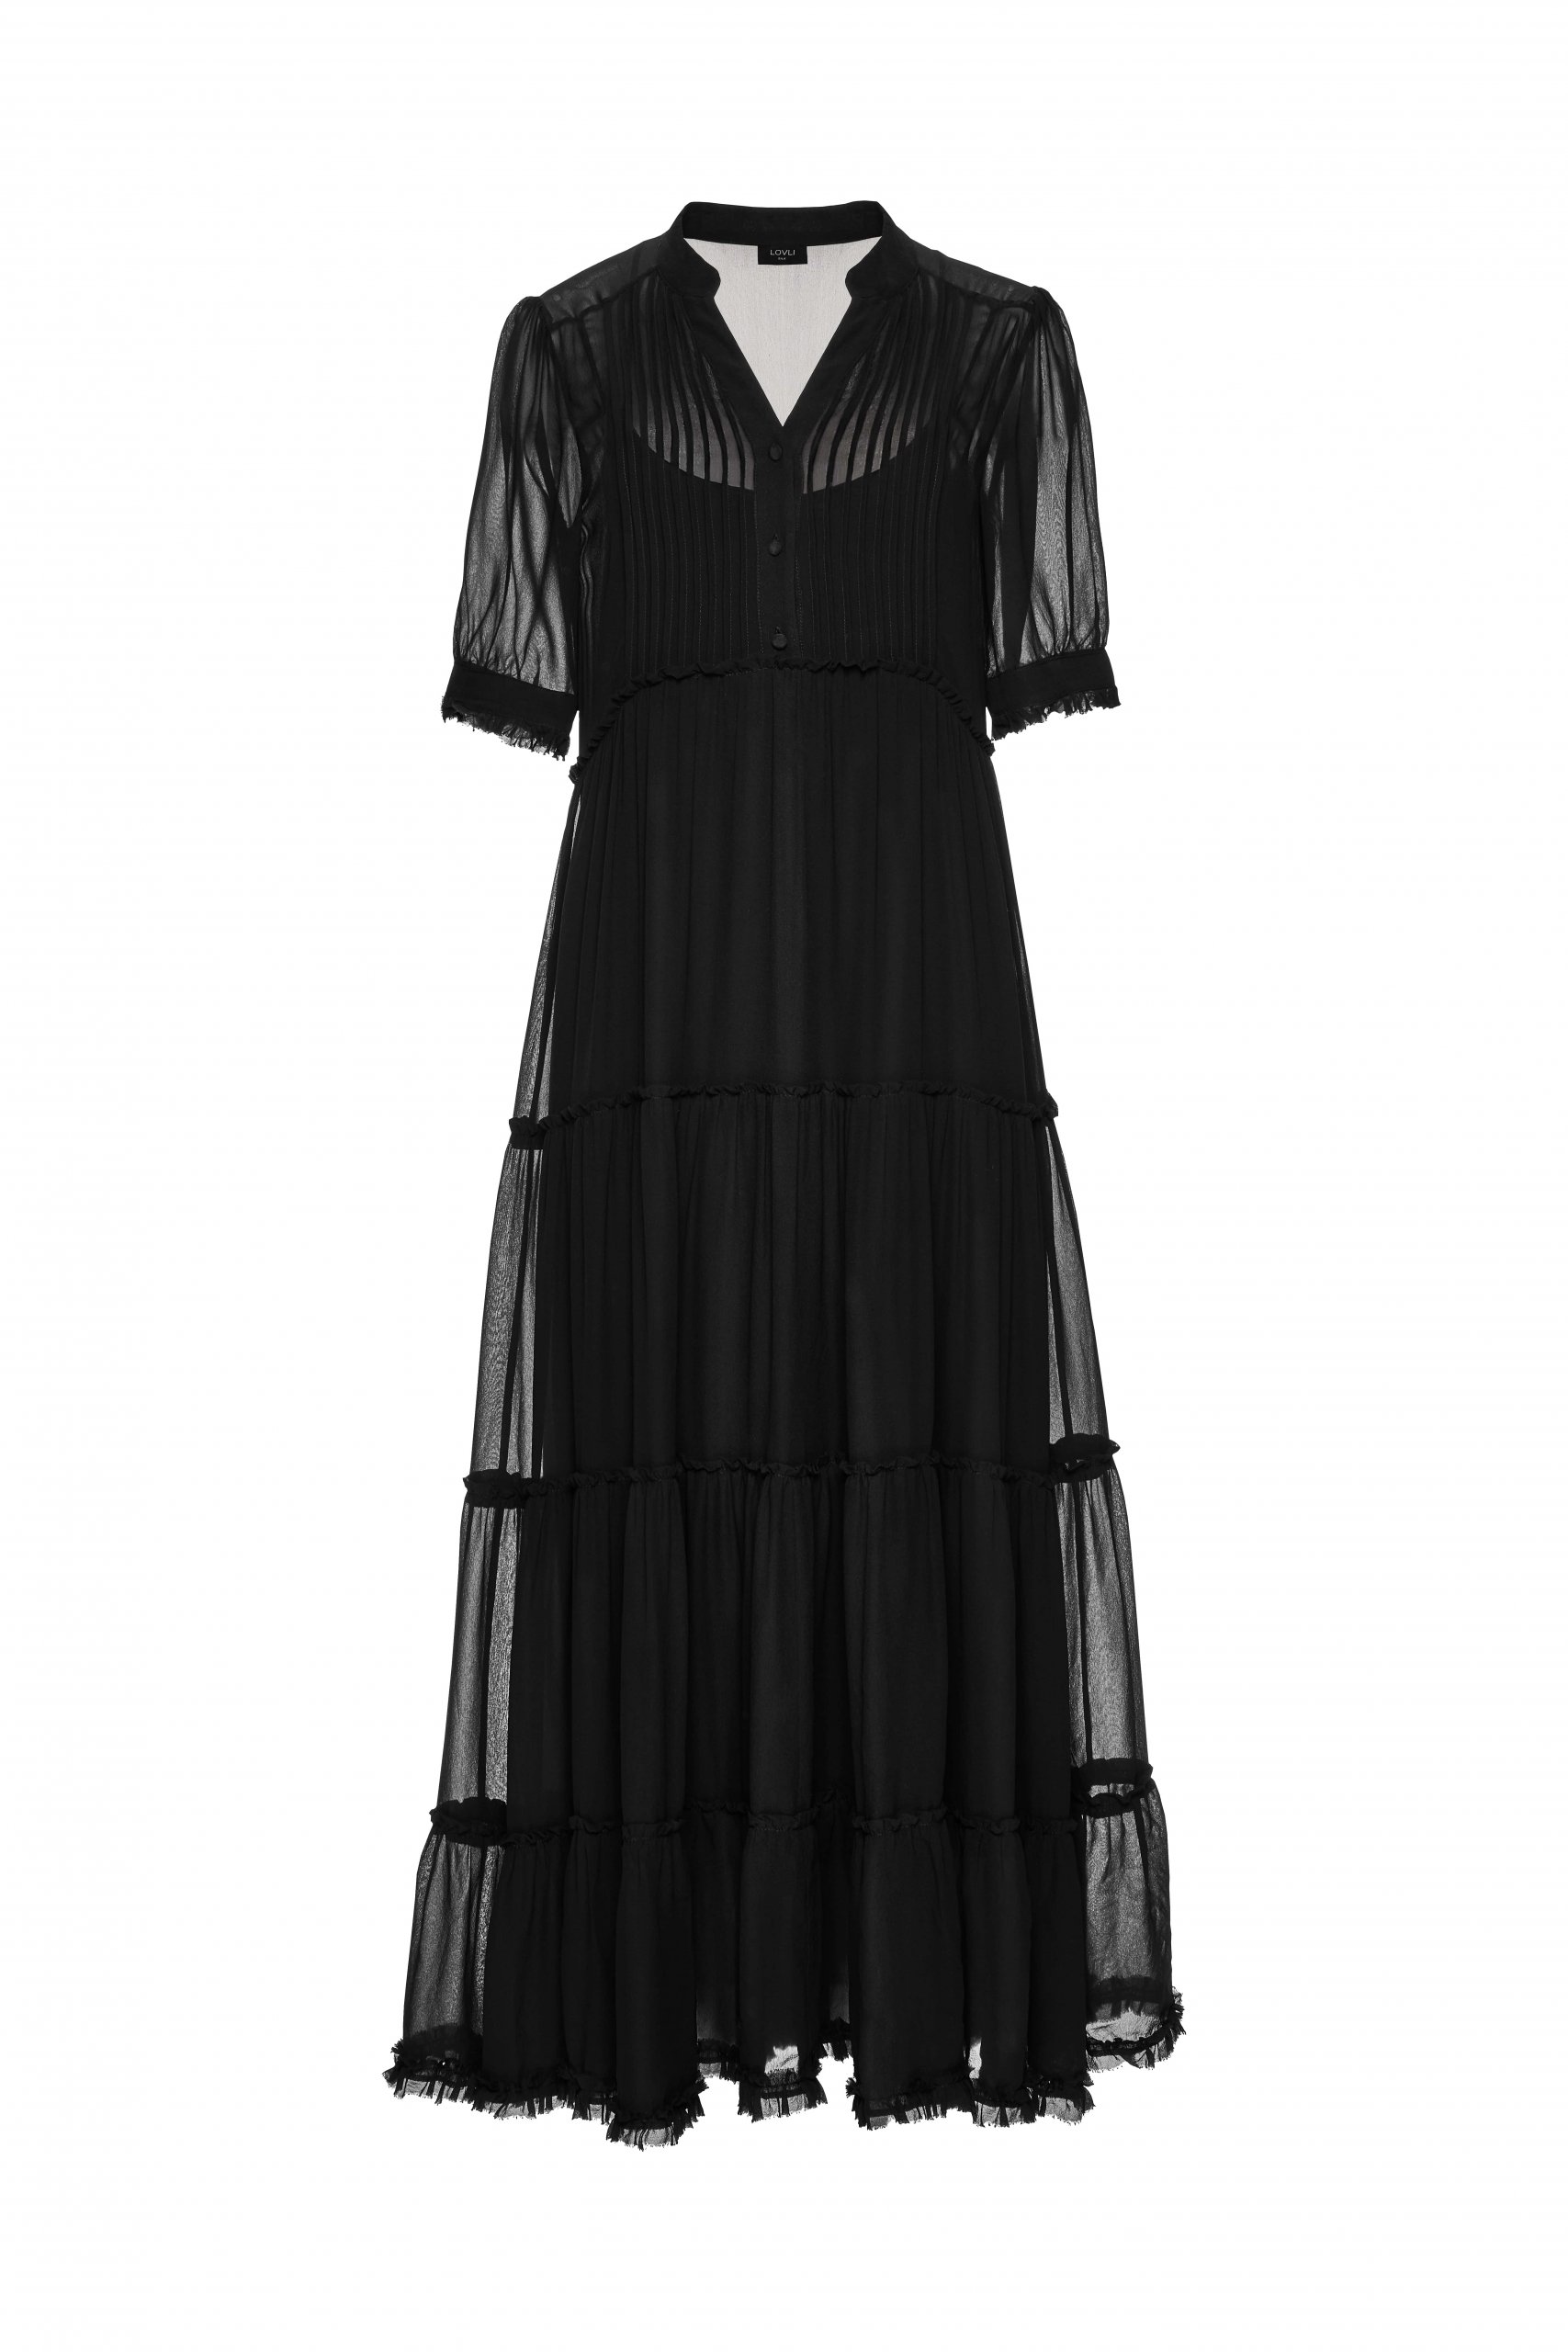 Jedwabna suknia czarna